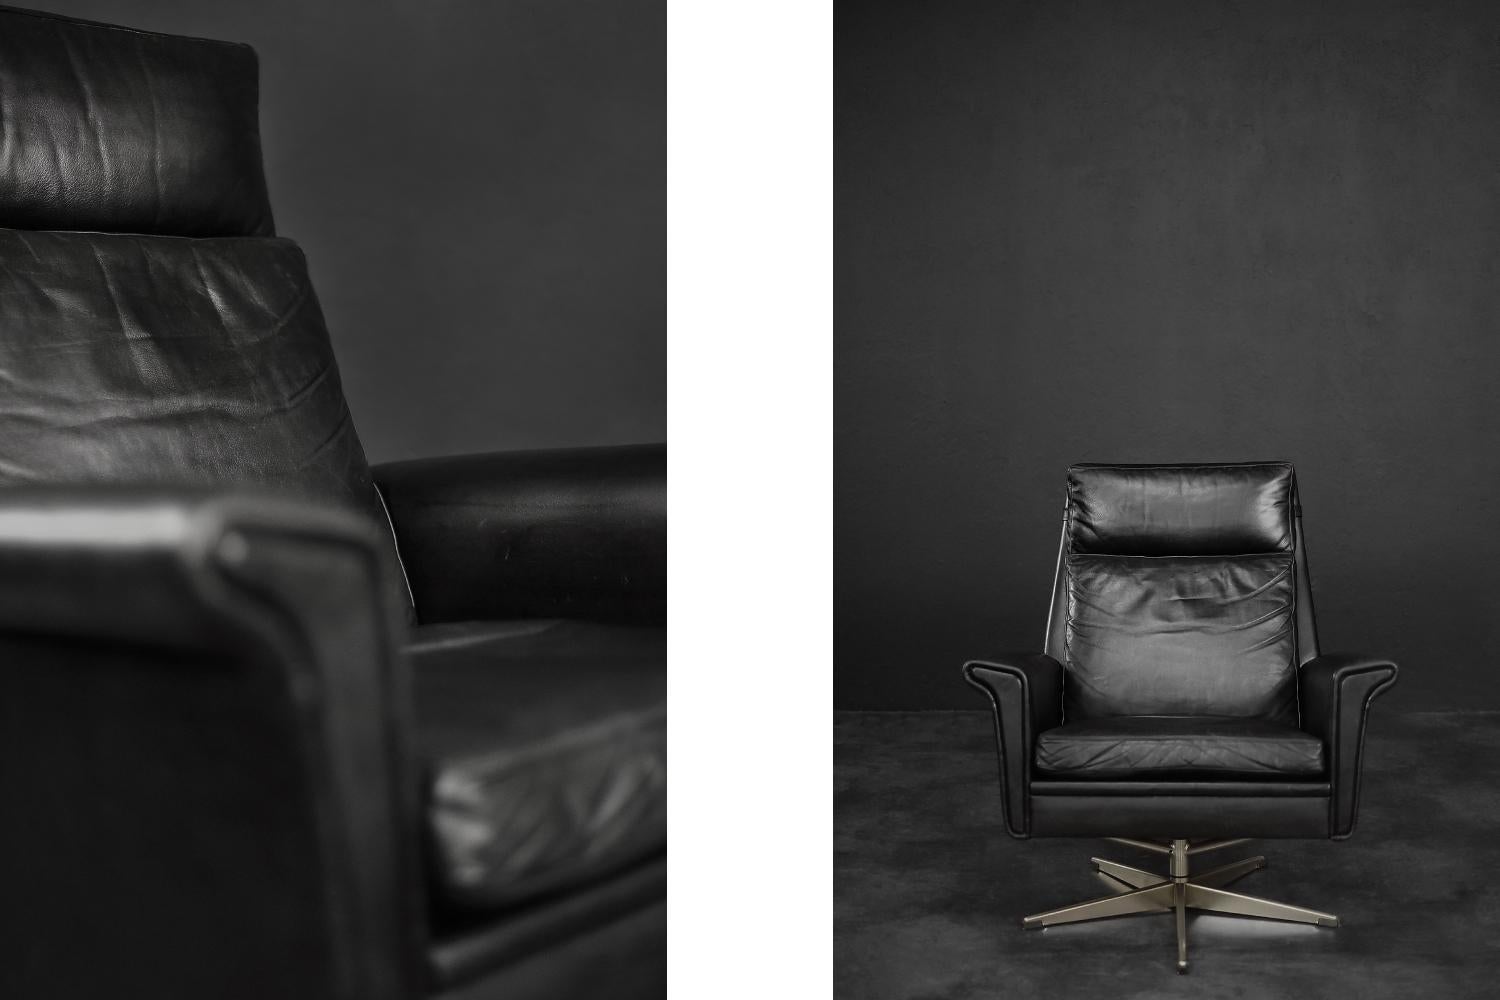 Ce rare fauteuil de bureau a été conçu par le designer danois Georg Thams dans les années 1960. Il est recouvert de cuir naturel noir. Il est doté de trois oreillers placés librement. Le fauteuil est spacieux et confortable, et les larges accoudoirs